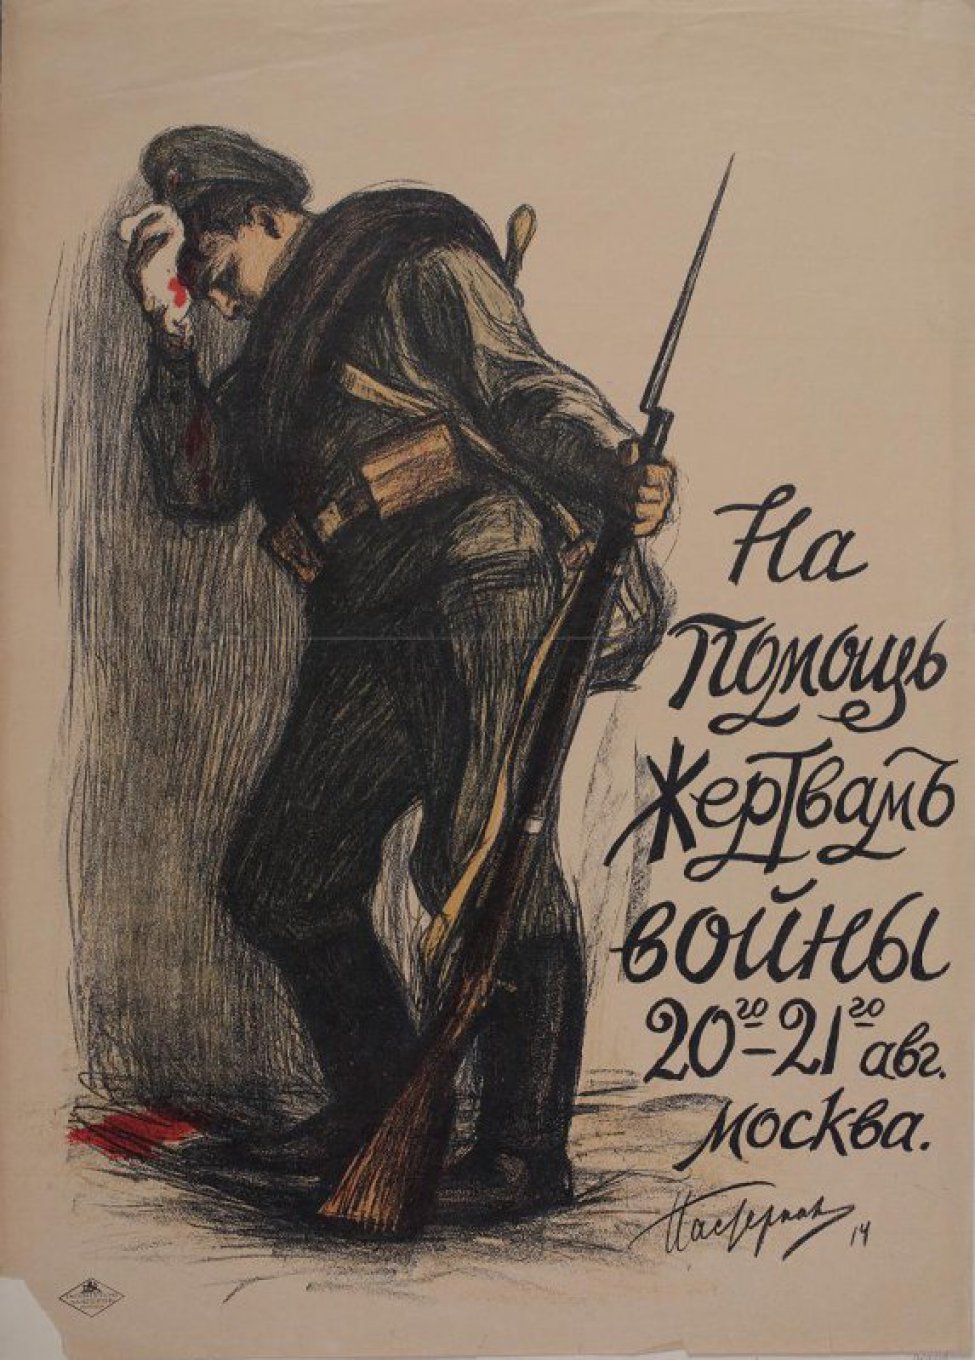 Изображен раненый в голову солдат, прислонившийся к стене. В левой руке у него винтовка. Справа напечатанная надпись: "На помощь жертвам войны 20-го 21-го авг. Москва."